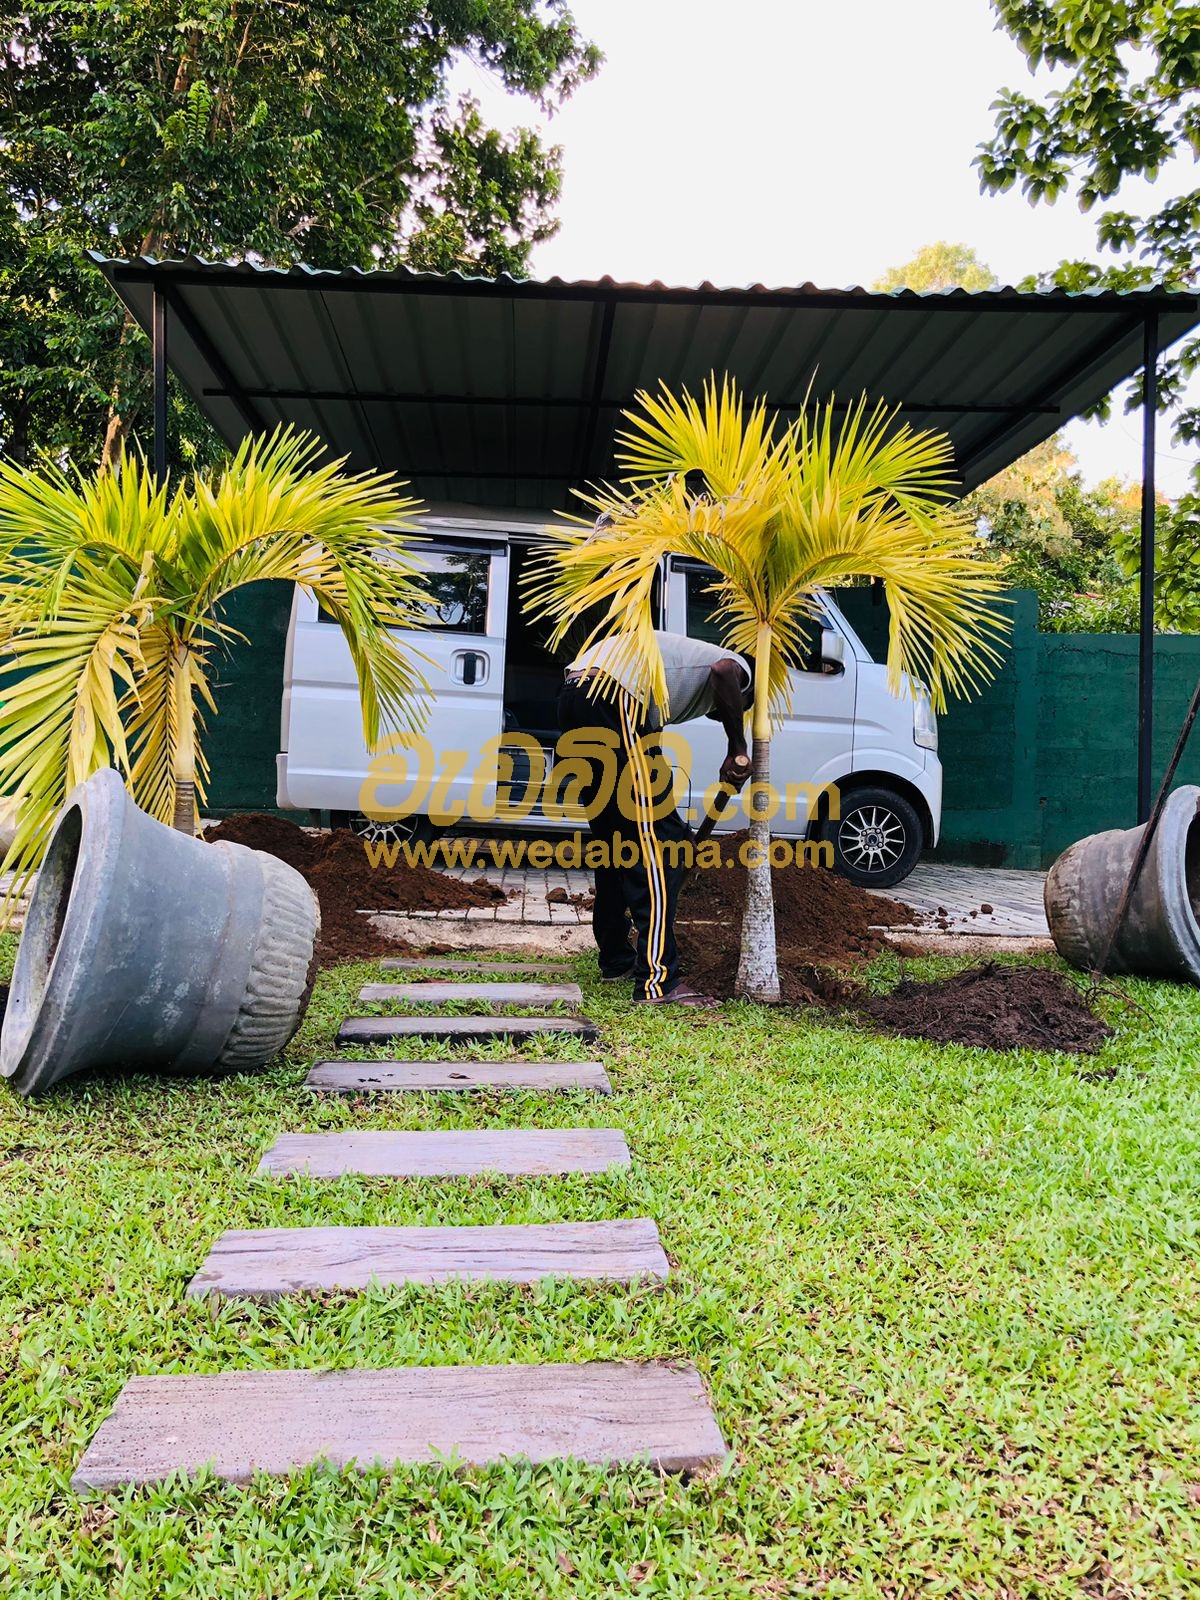 Landscaping companies in Sri Lanka